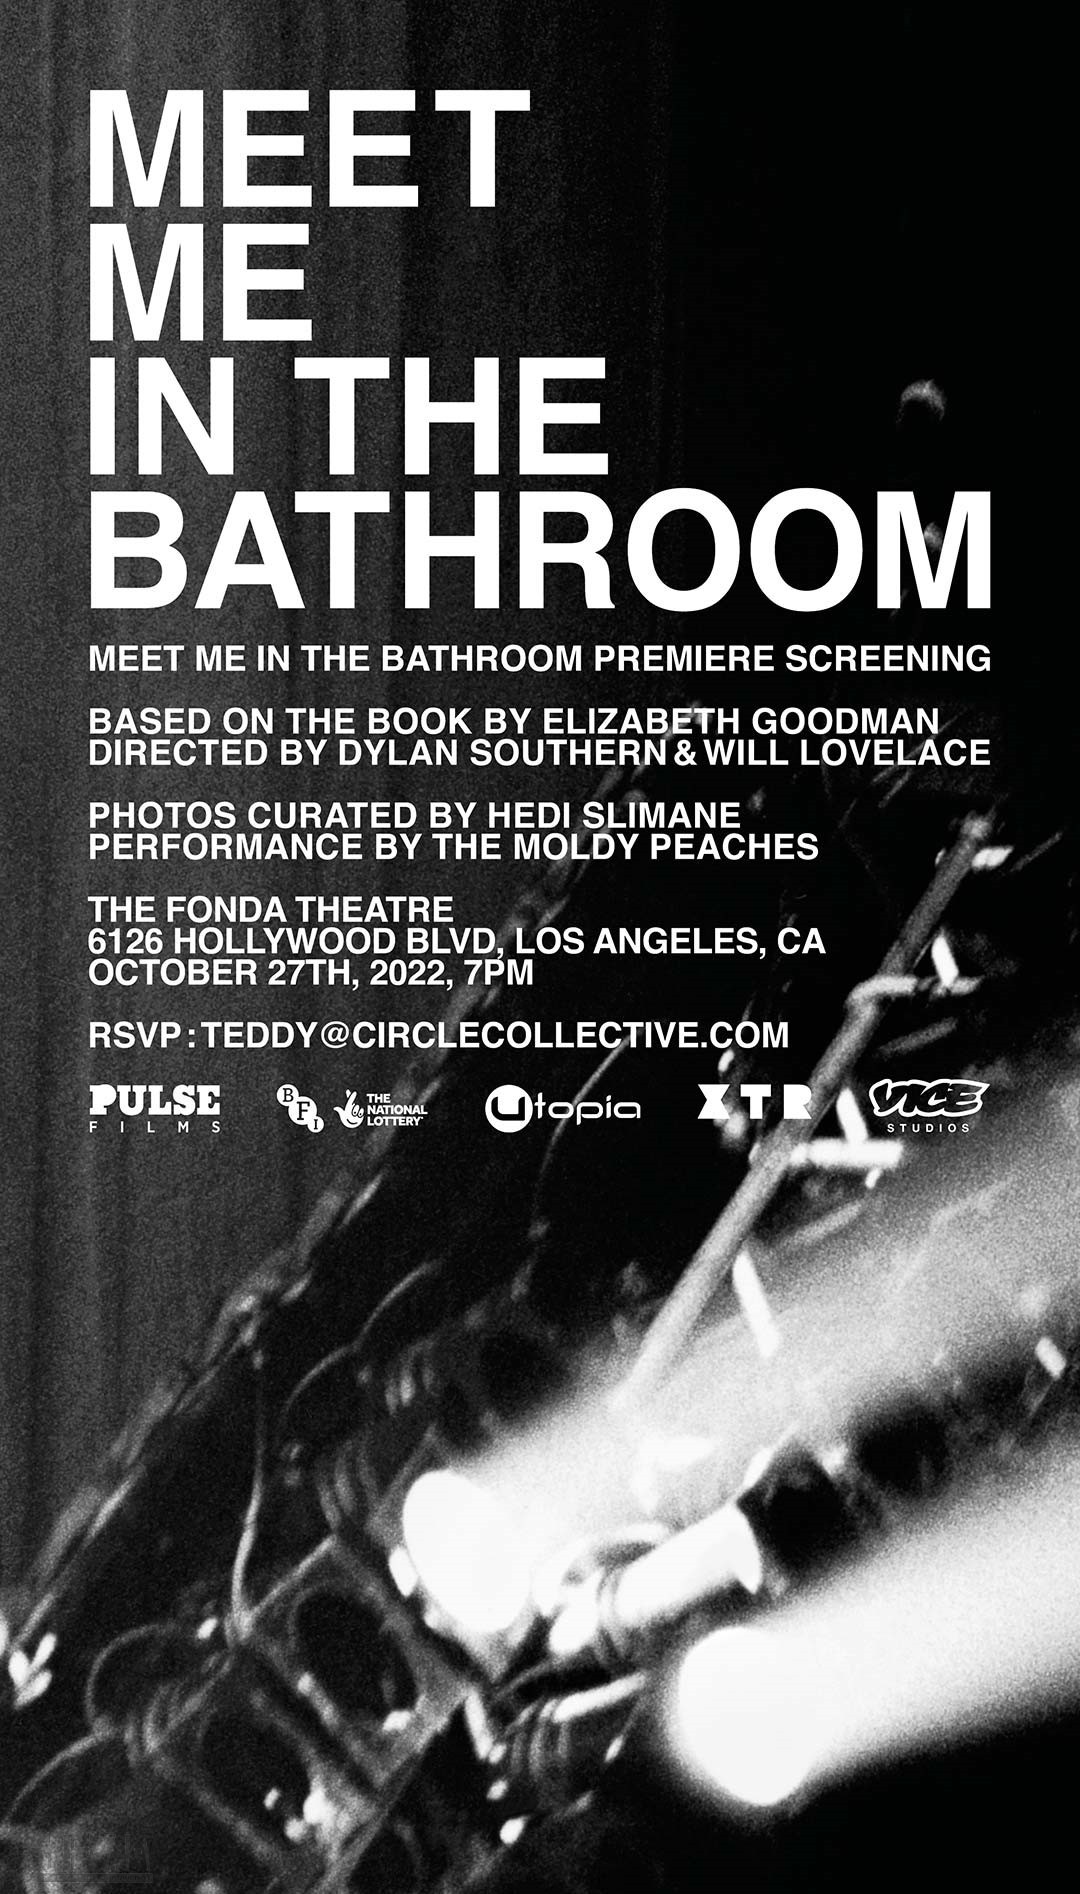 MEET-ME-IN-THE-BATHROOM_EMAILERS_LA.jpg